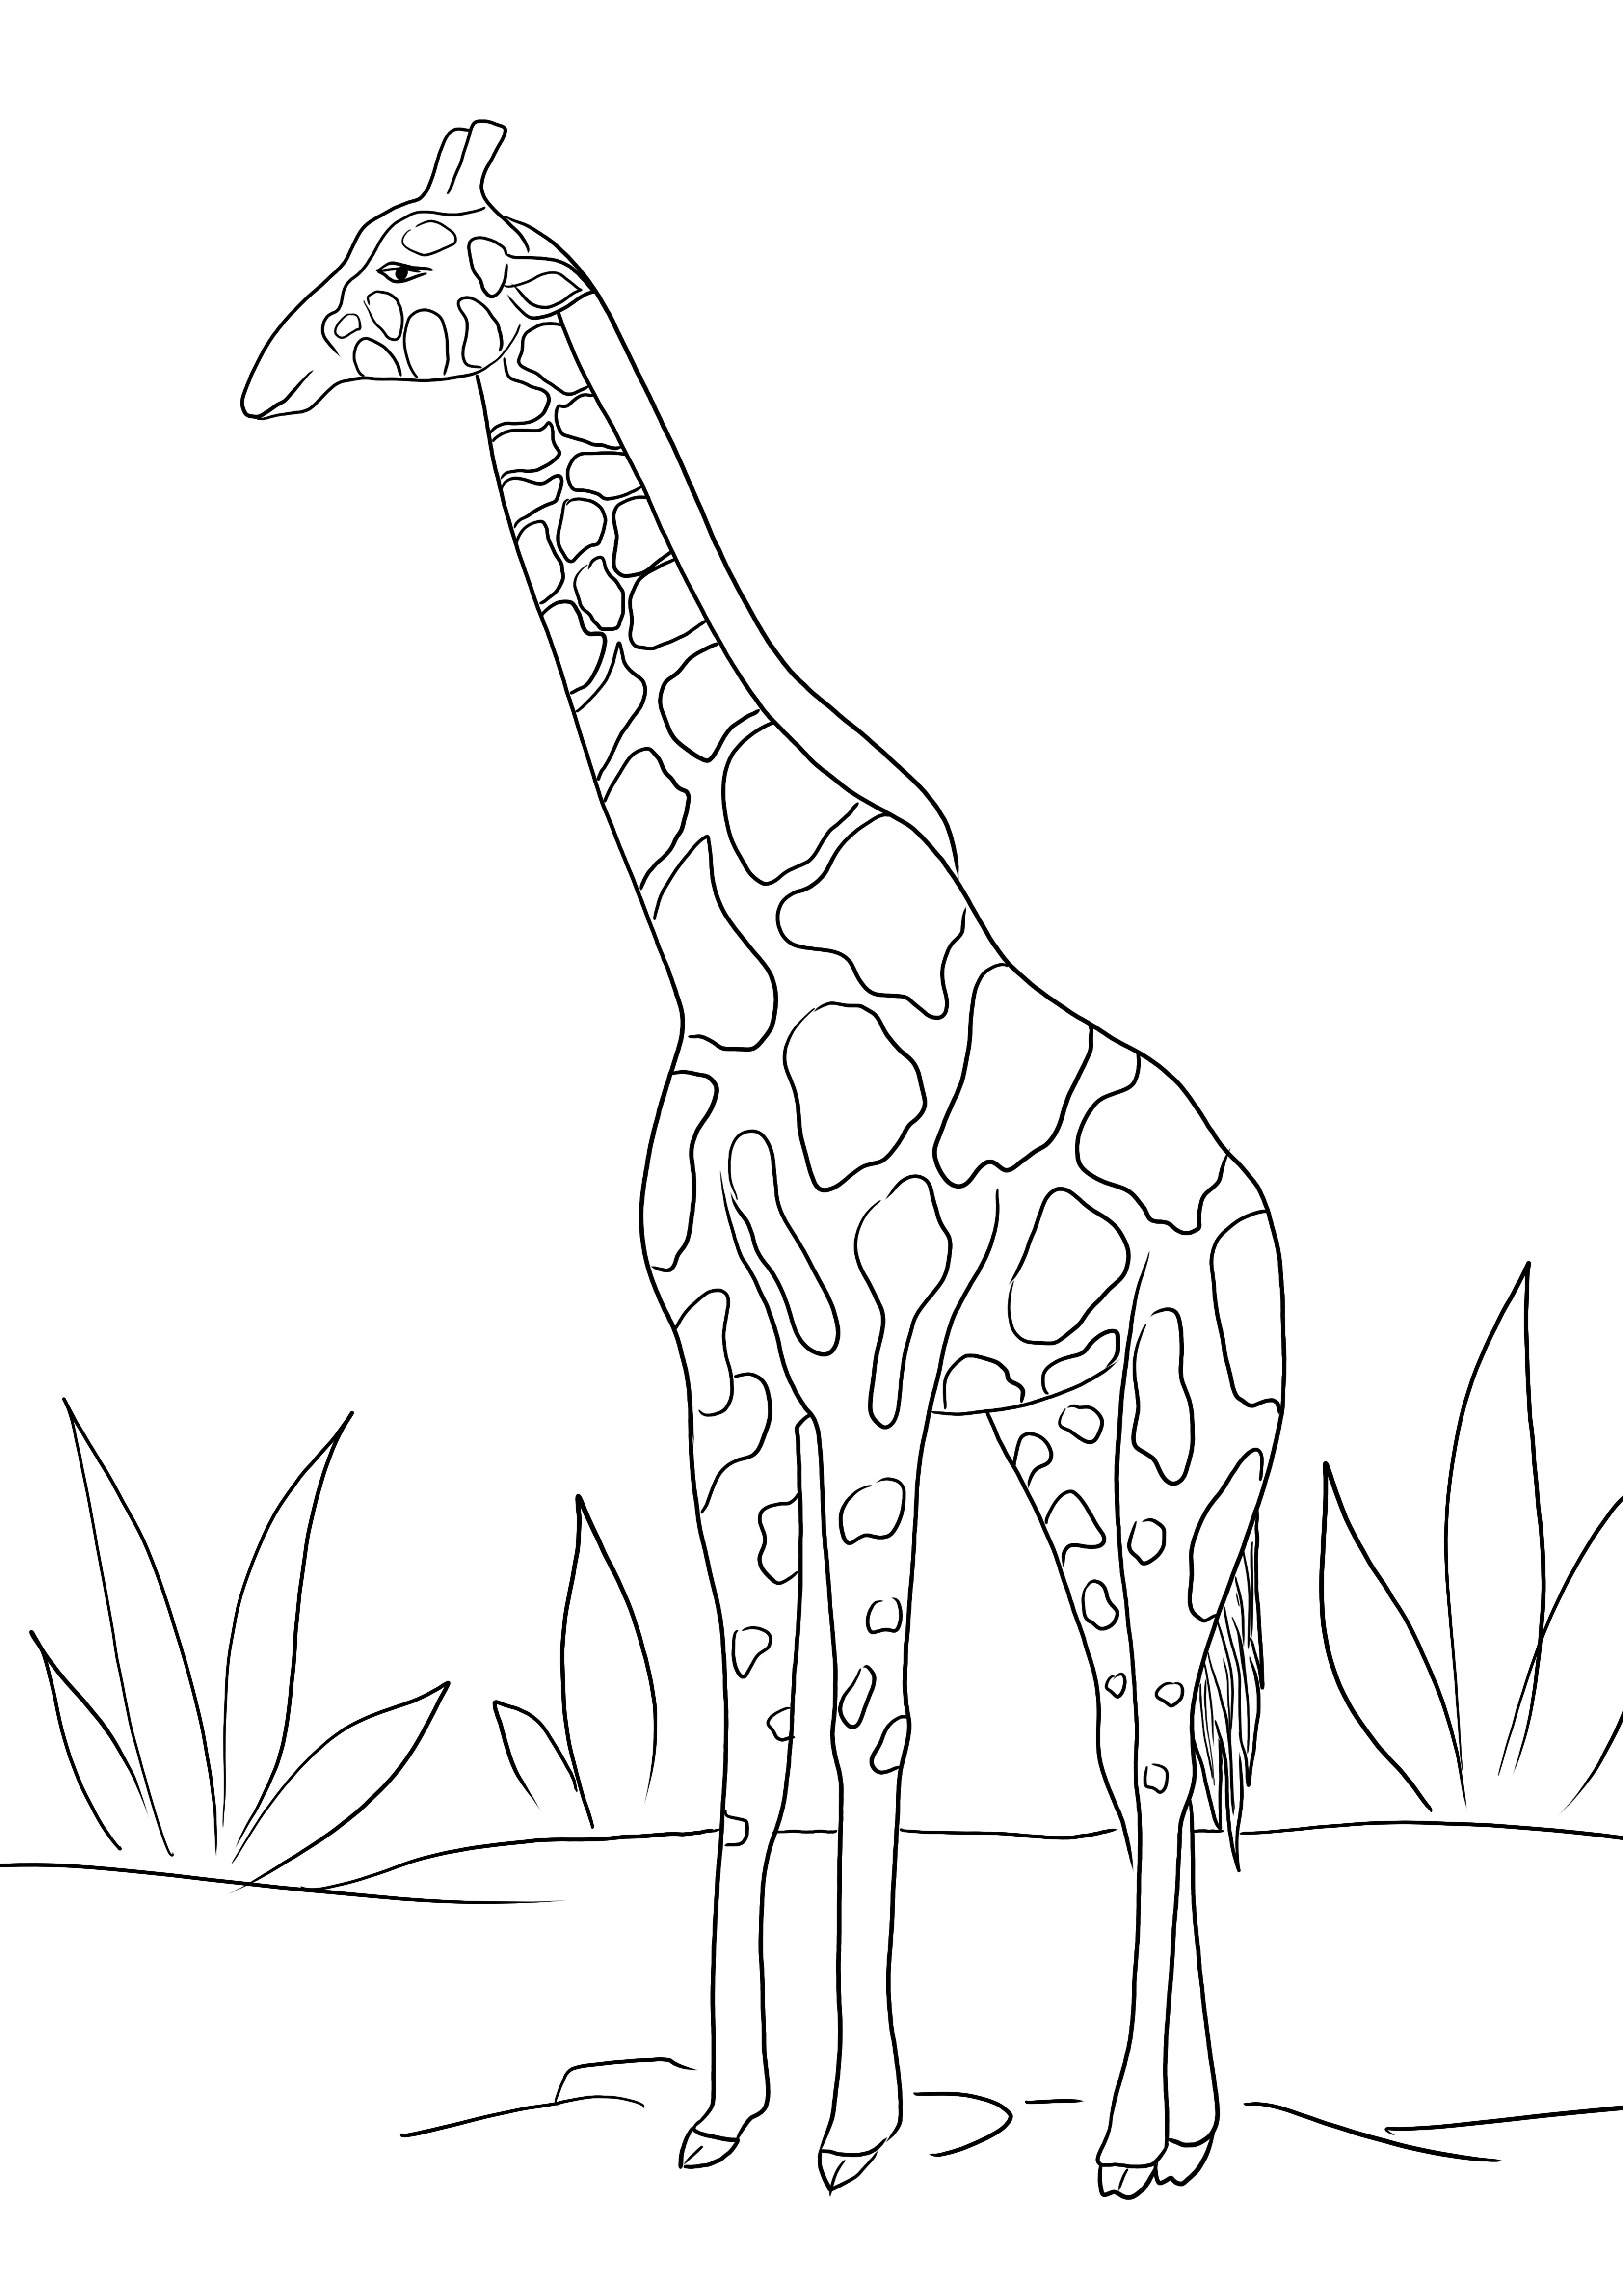 Giraffe voor gratis kleuren en eenvoudig downloaden van afbeeldingen om in te kleuren kleurplaat